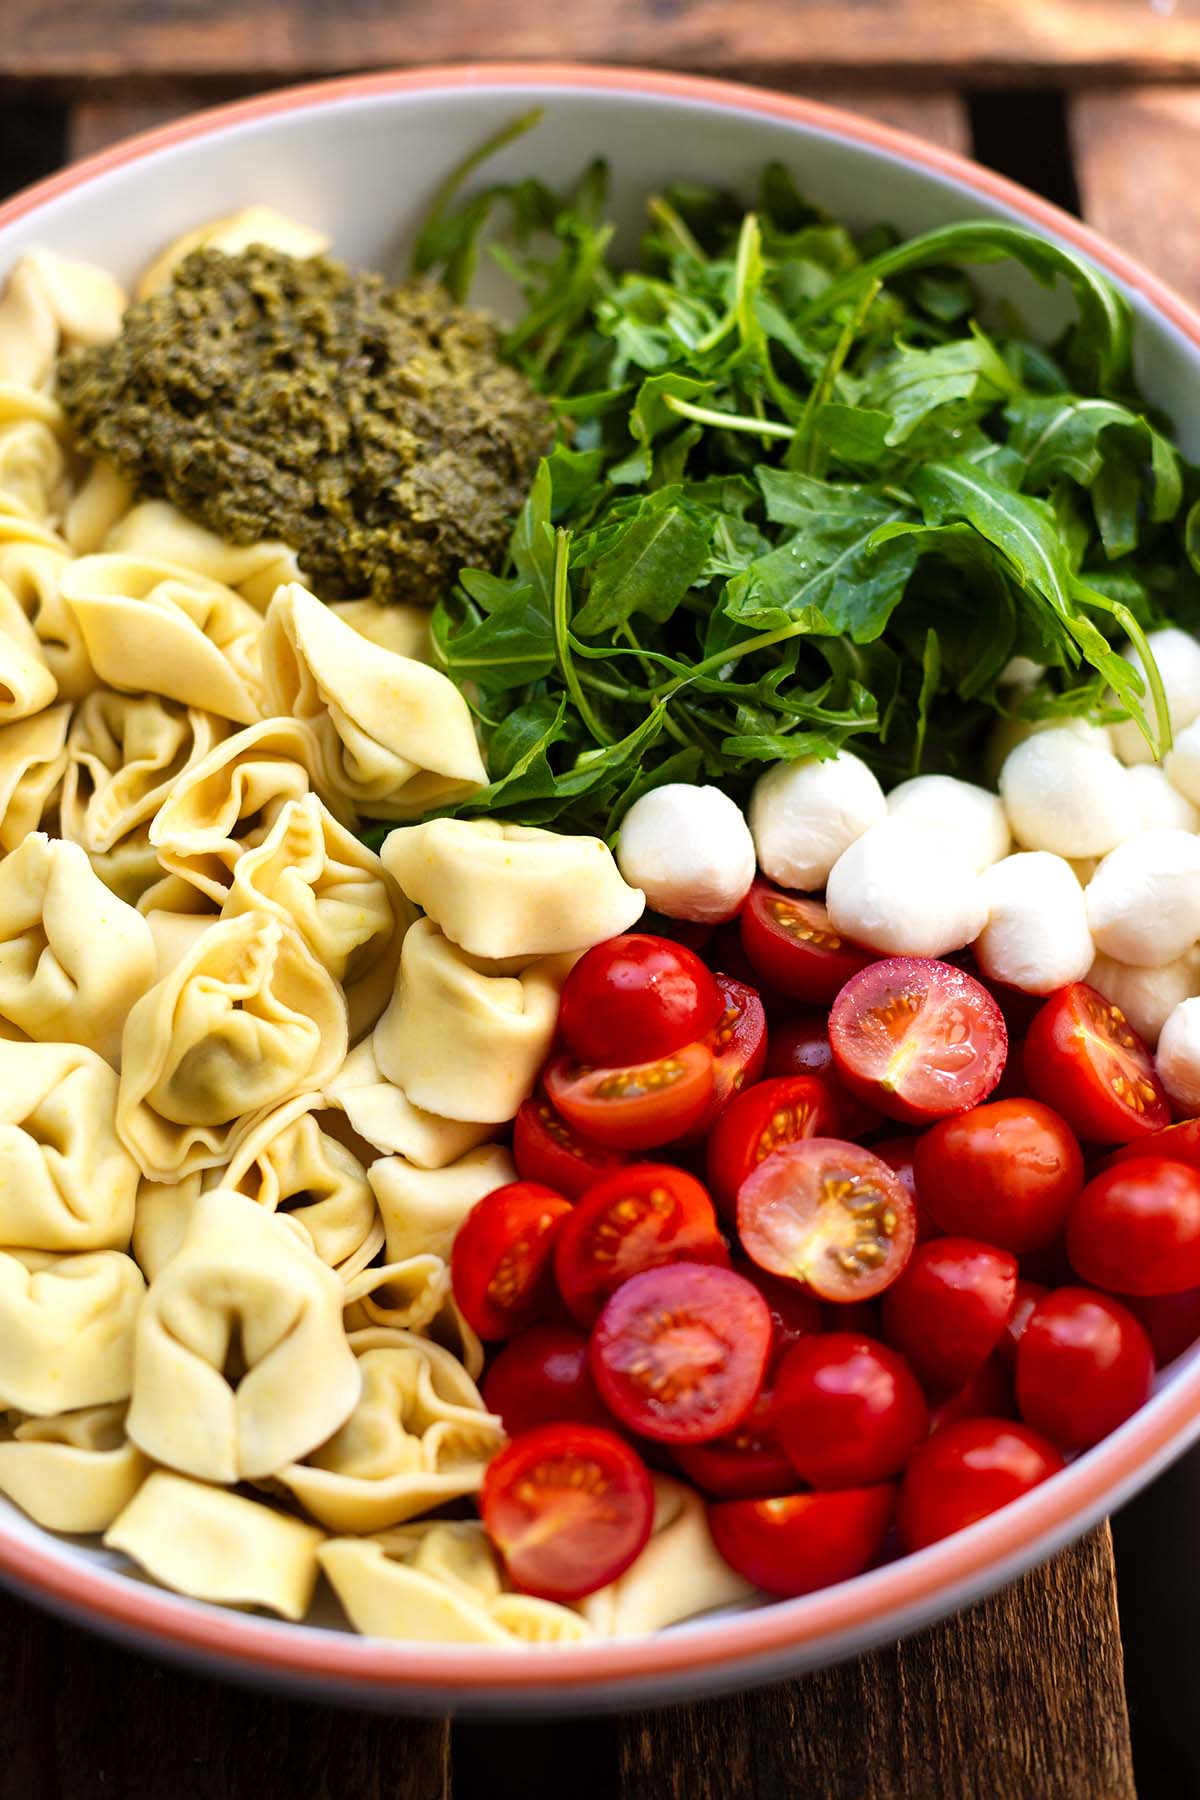 Alle Zutaten für das Tortellinisalat Rezept in einer großen Schüssel.
Zu sehen sind: Cherrytomaten, Rukola, Mozzarella-Kügelchen, grünes Pesto und Tortellini.